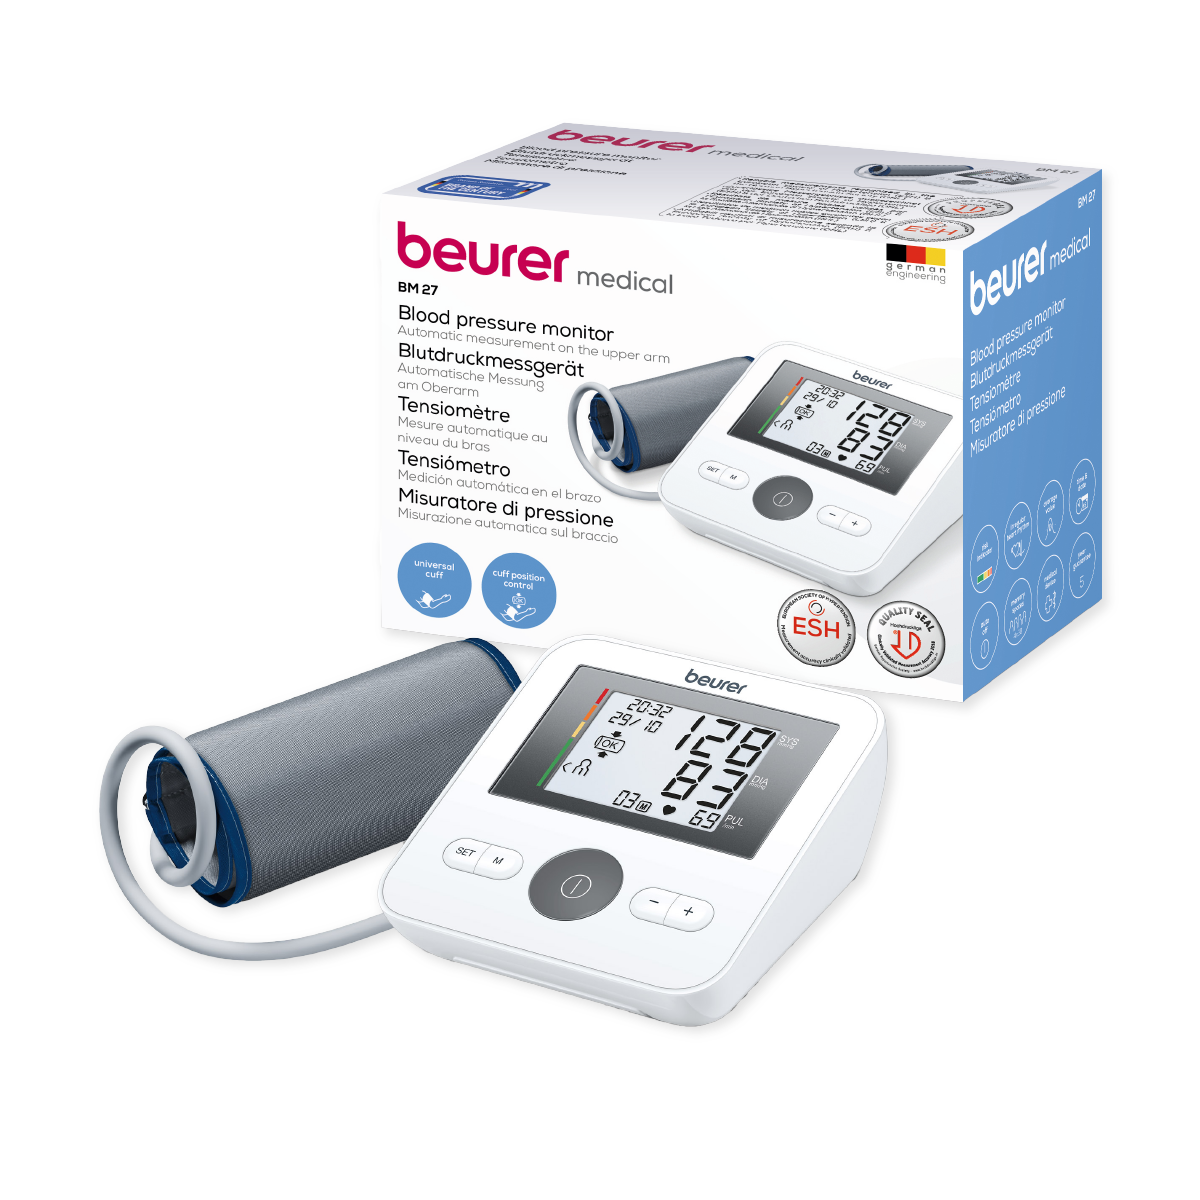 Monitor de presión arterial baumanómetro digital de brazo con detector de arritmias BM27SB Marca Beurer